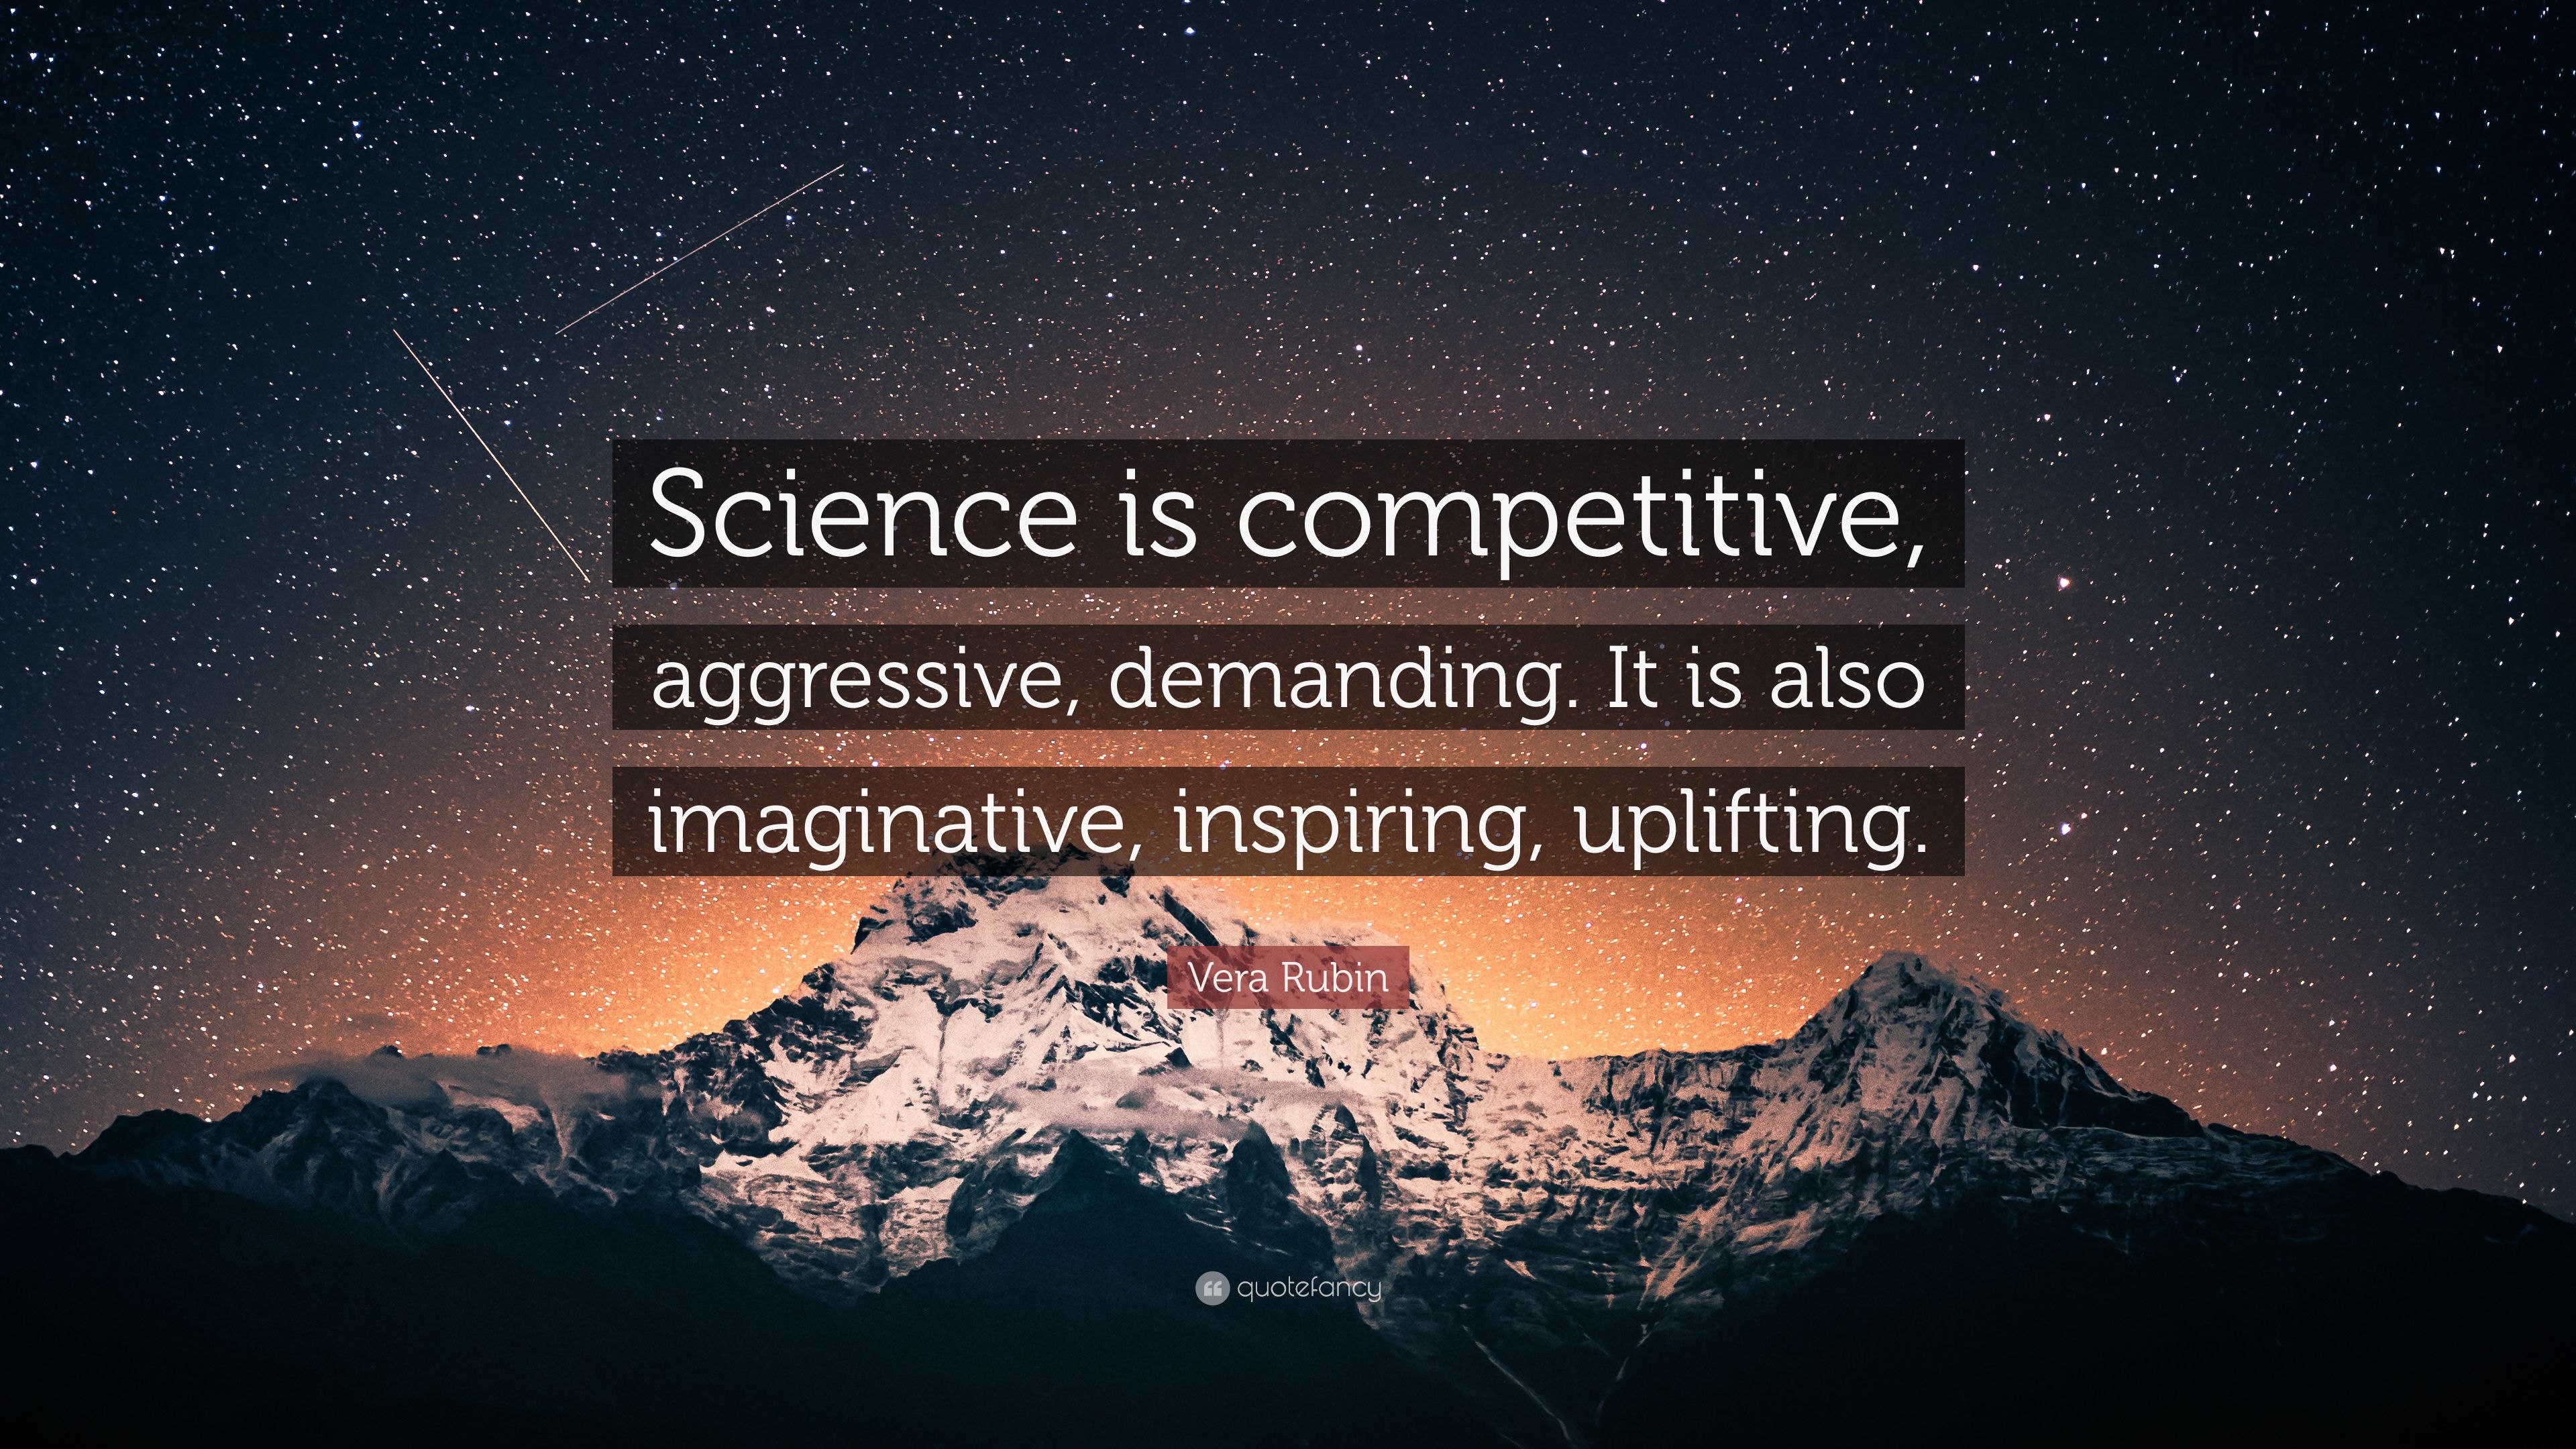 Vera Rubin Quote: “Science is competitive, aggressive, demanding